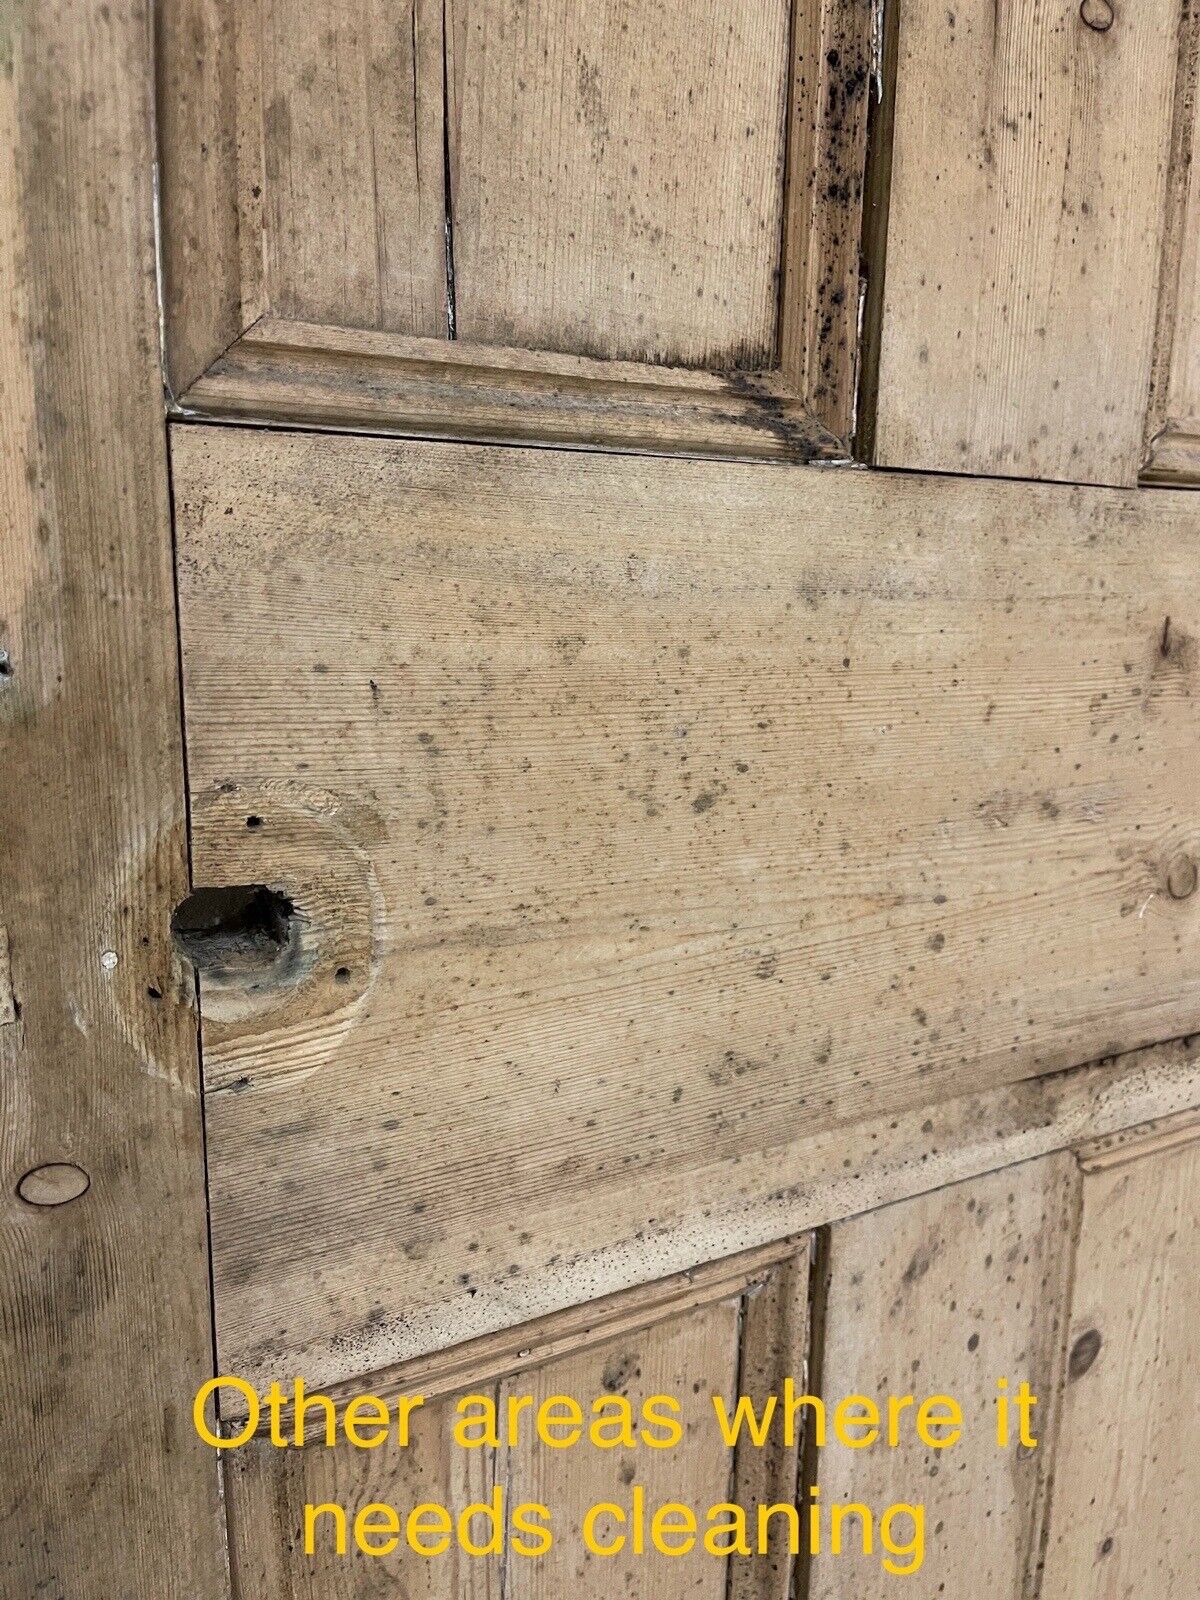 Distressed Reclaimed Victorian Pine Internal 4 panel Door 1910 x 695mm Or 690mm